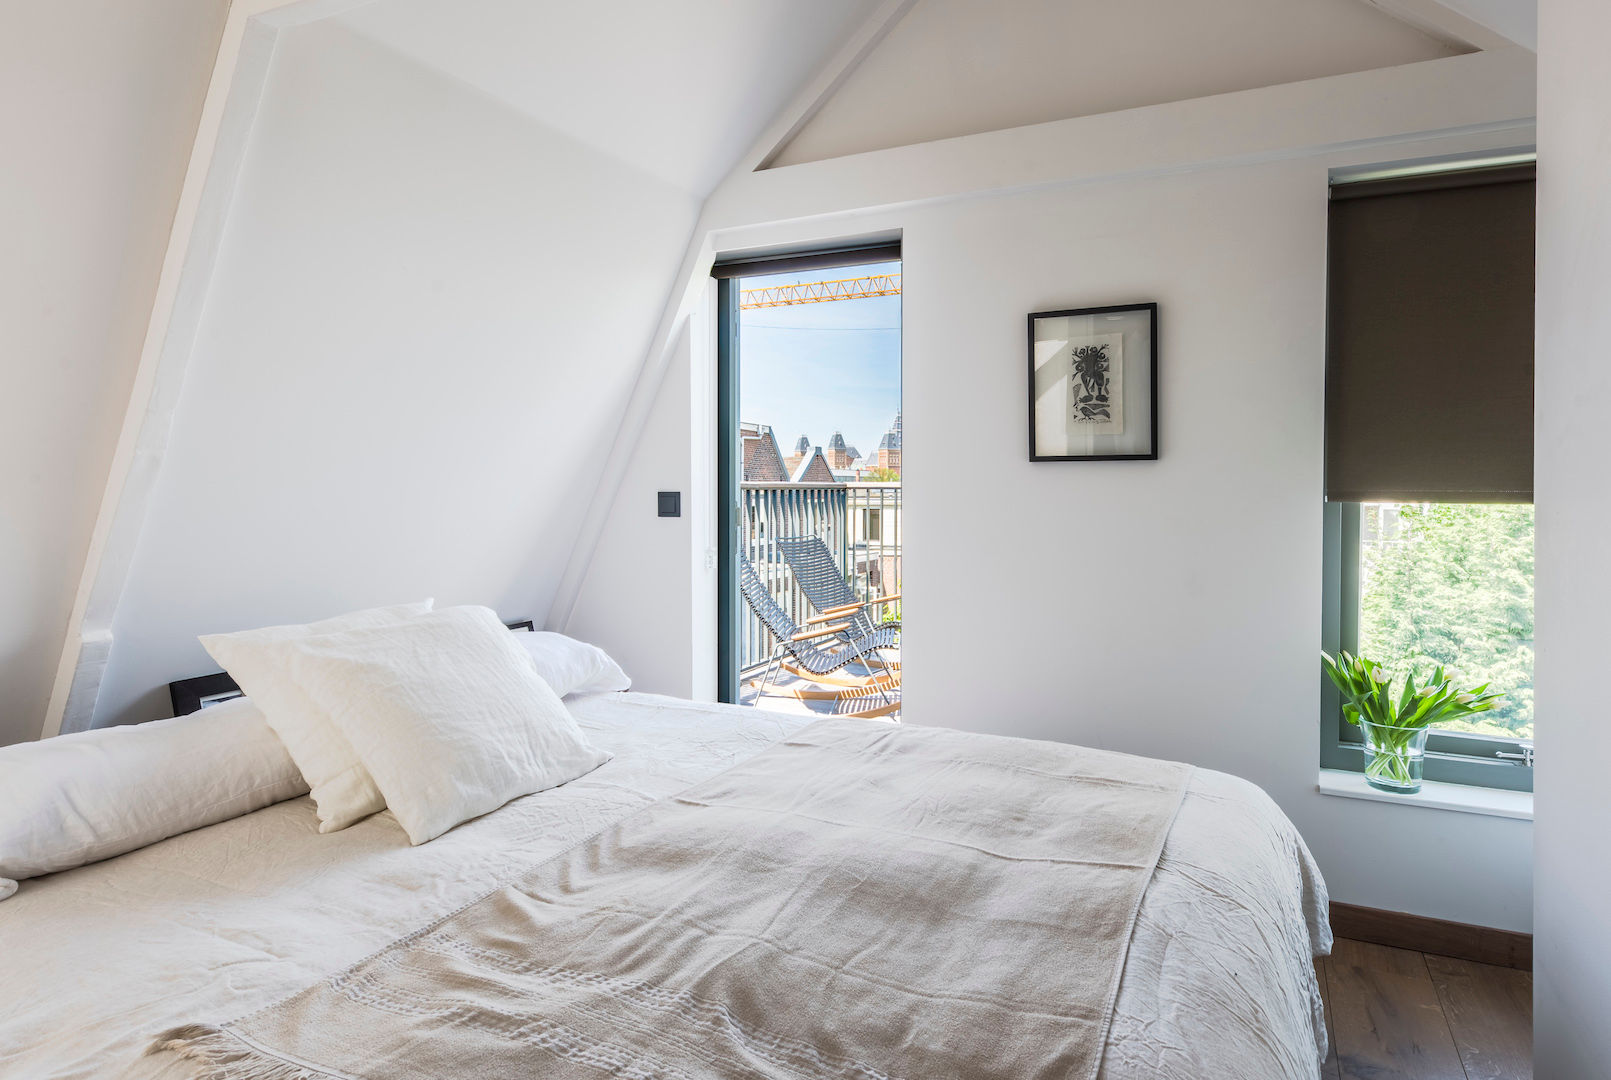 Loft bedroom homify Dormitorios de estilo moderno Bed,attic bedroom,loft bedroom,small bedroom